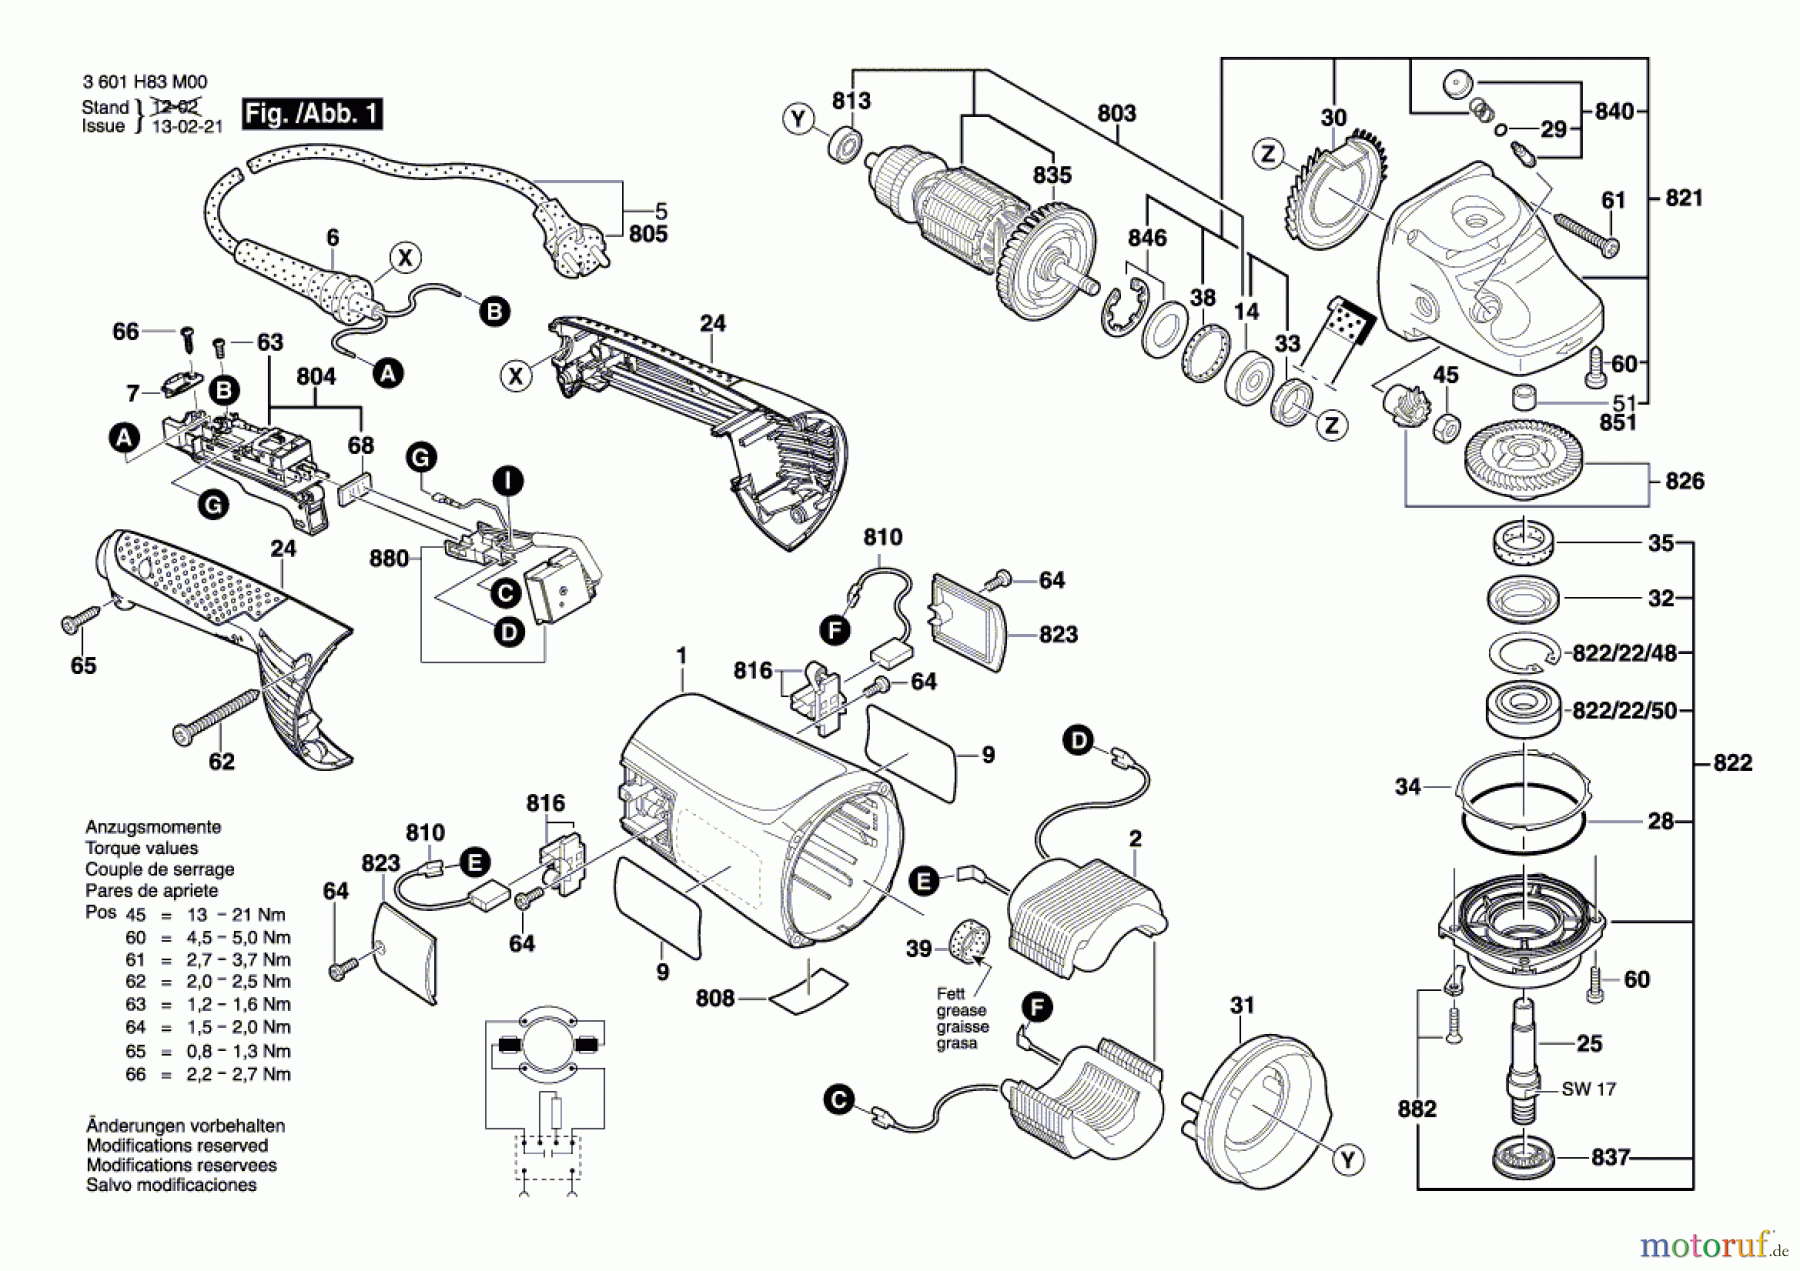  Bosch Werkzeug Winkelschleifer GWS 24-180 JH Seite 1